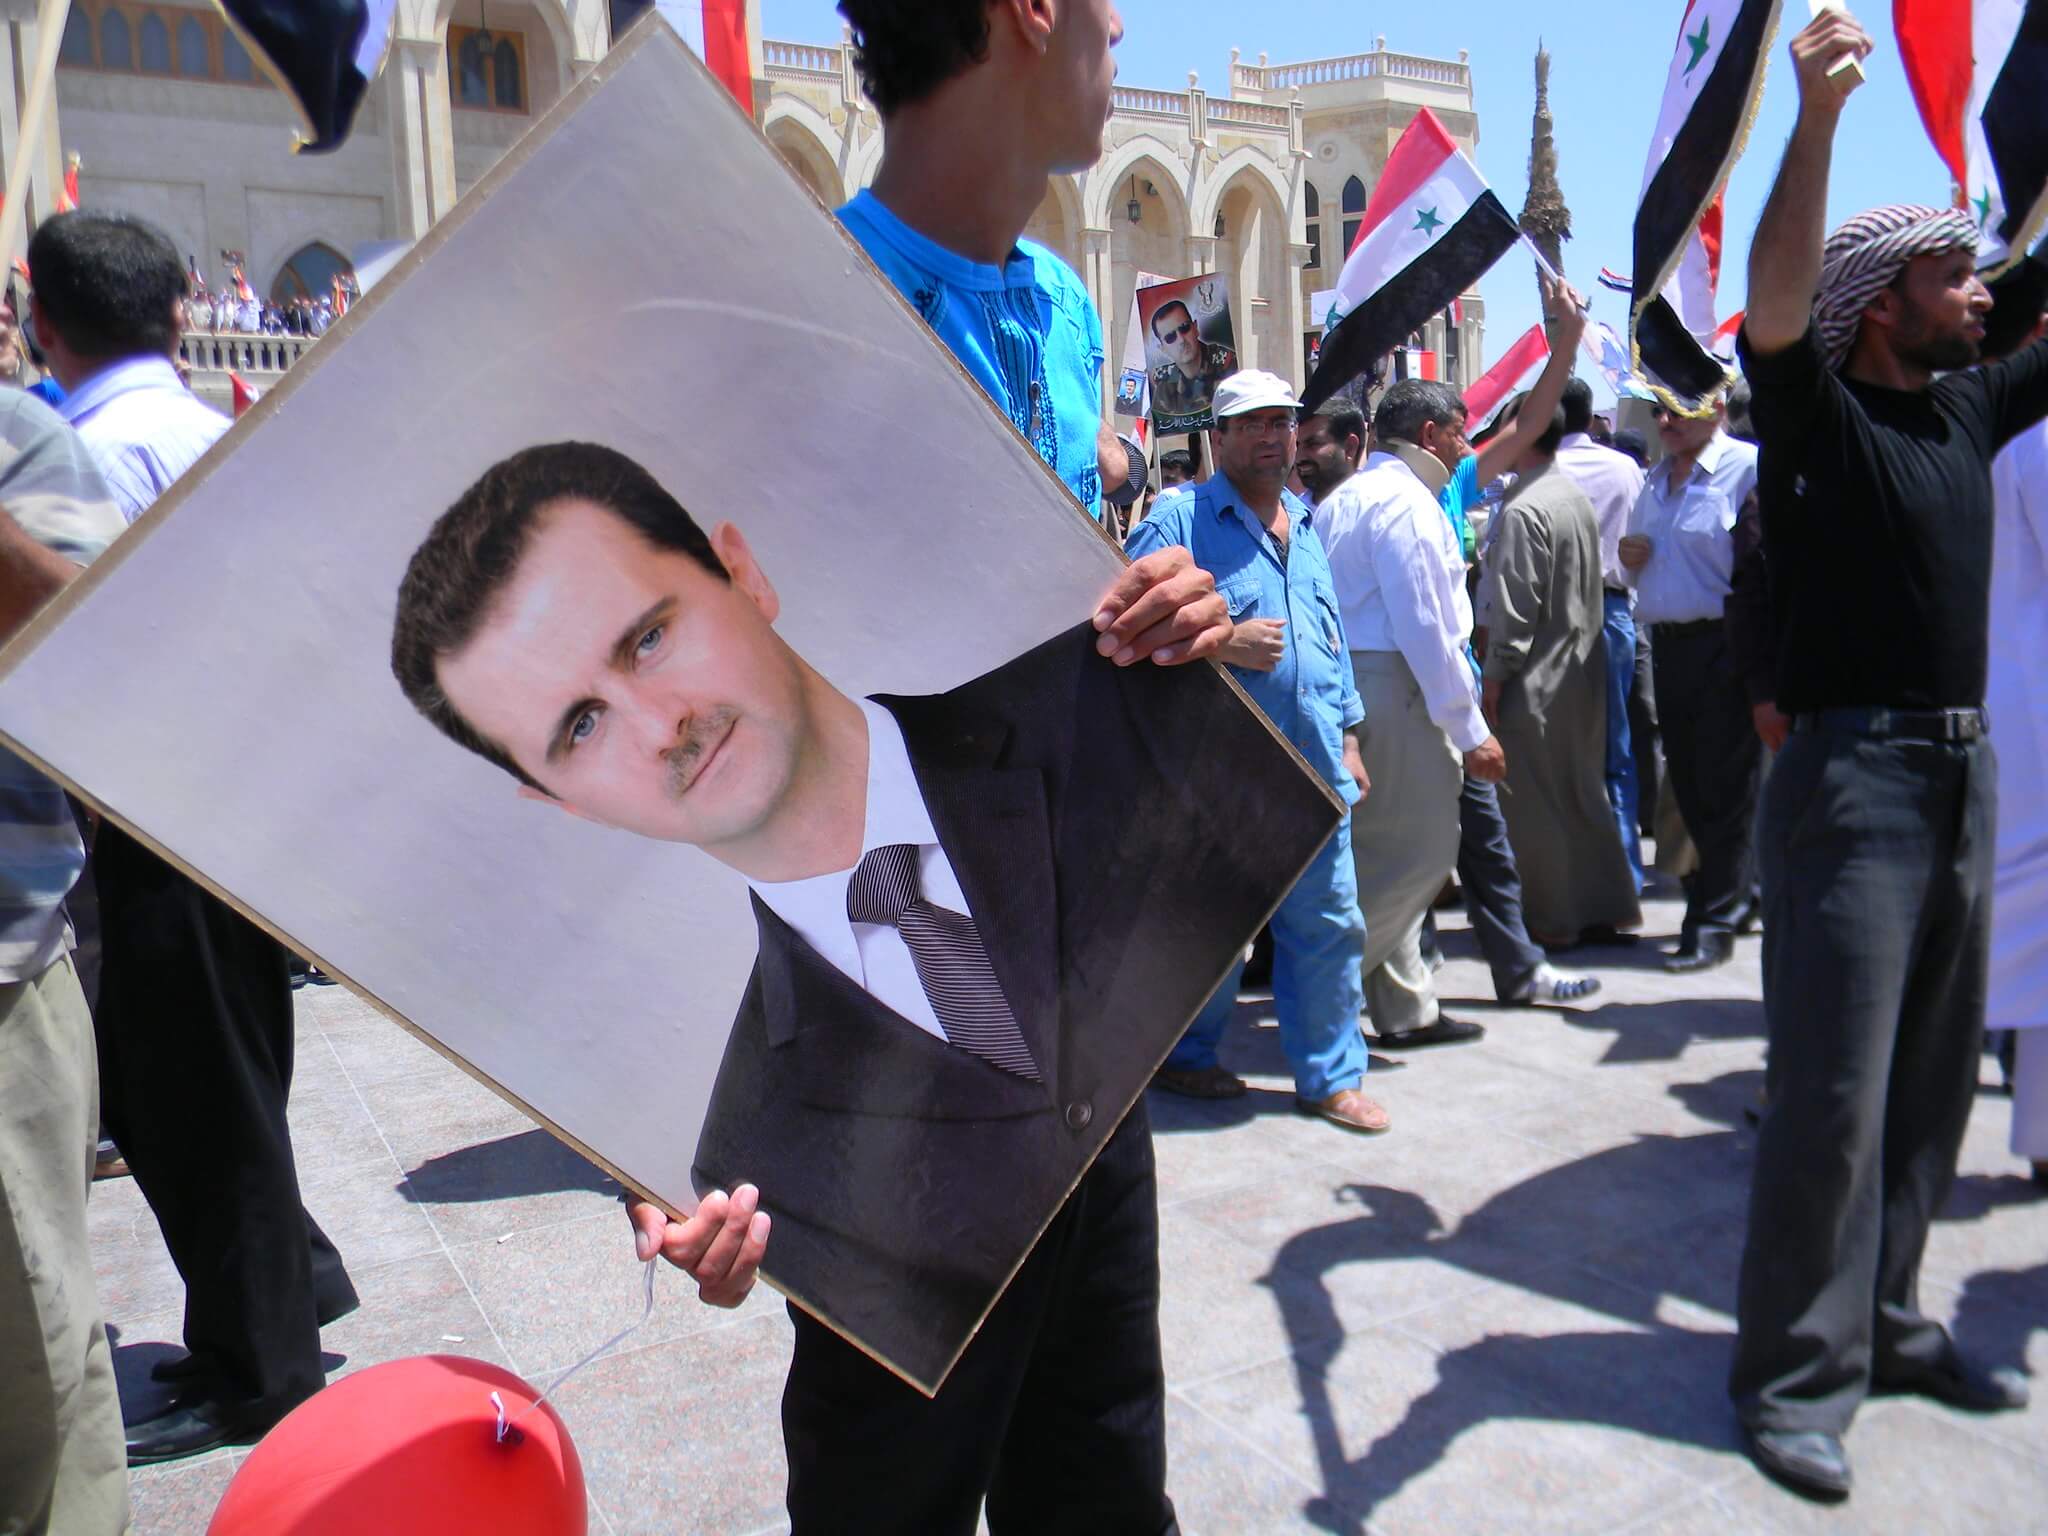 Pro-Assad protest in 2010, vlak voor het uitbreken van de burgeroorlog. © Flickr - Beshr Abdulhadi 